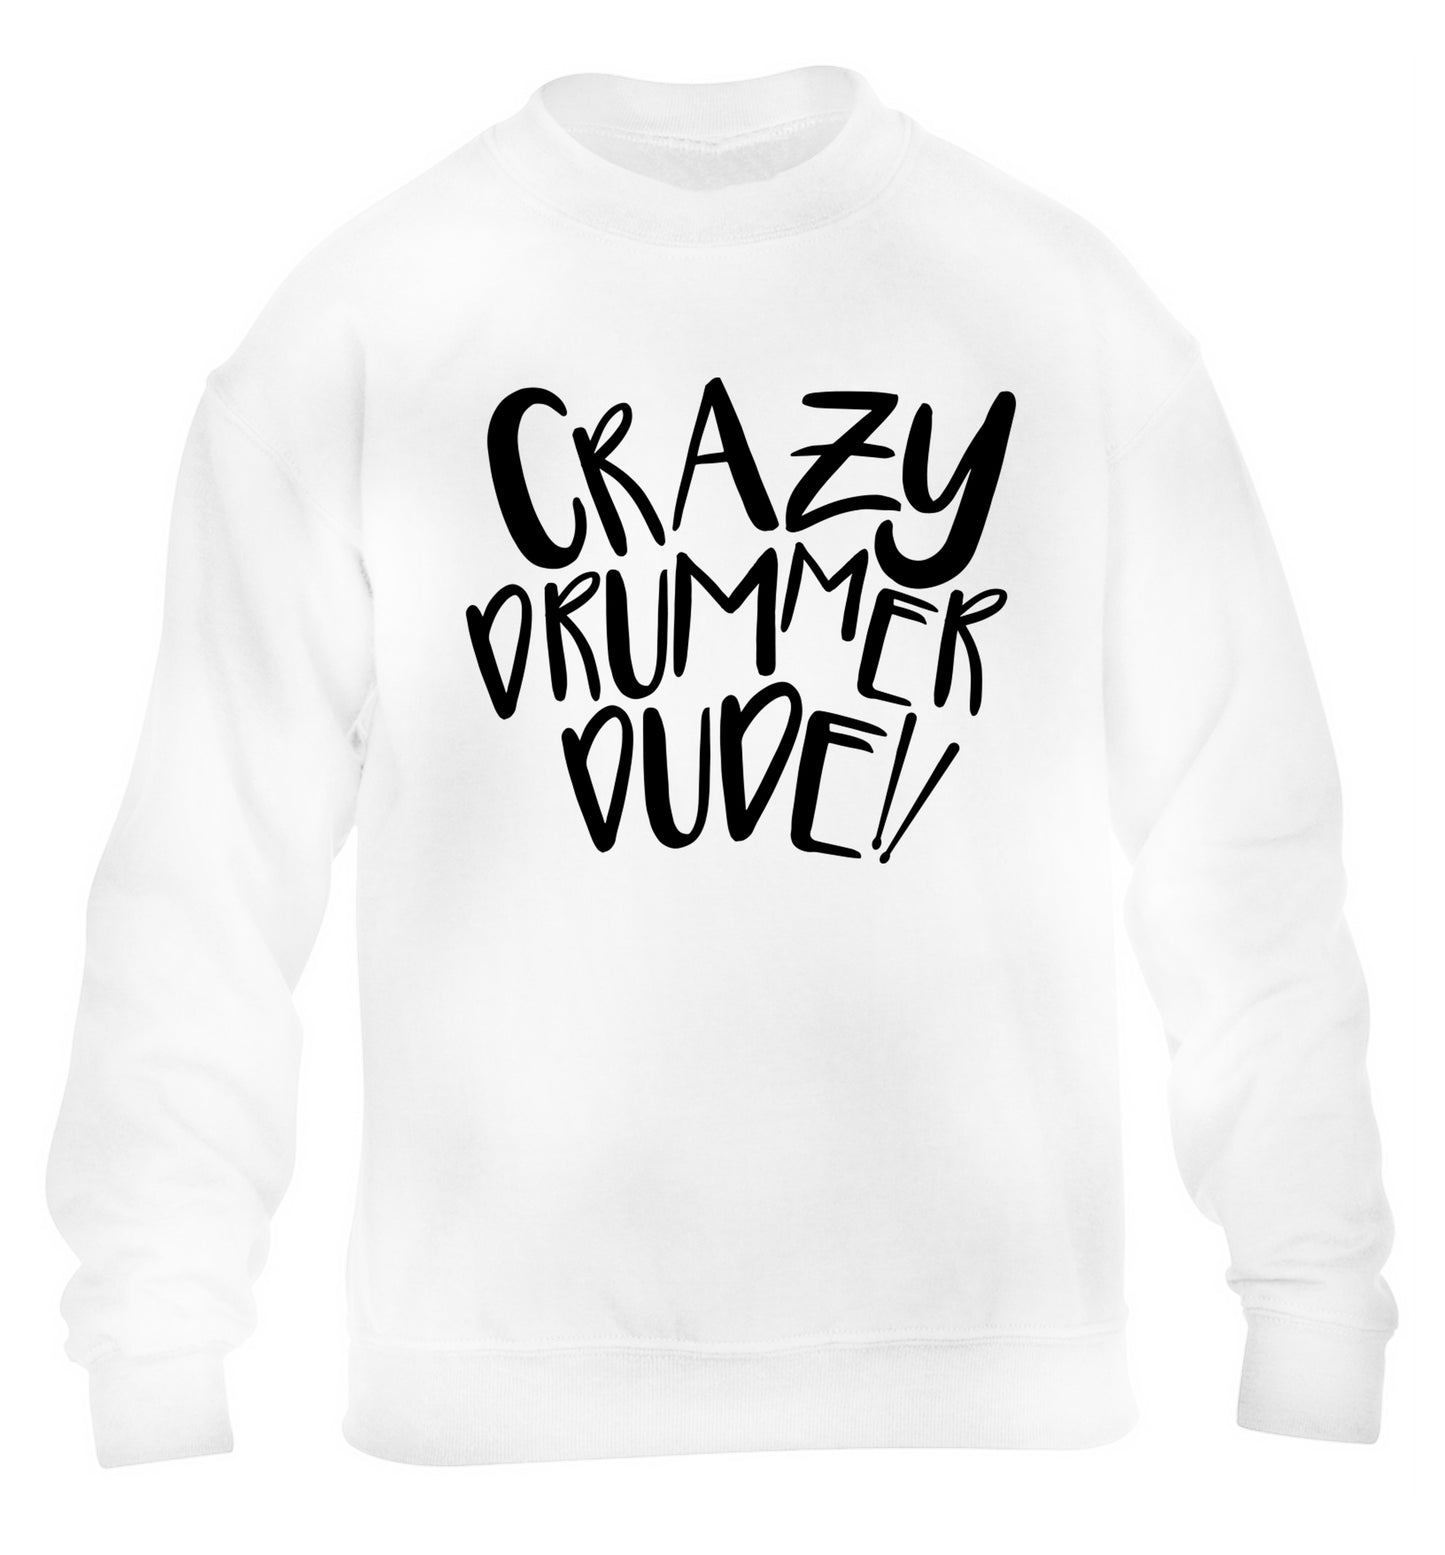 Crazy drummer dude children's white sweater 12-14 Years